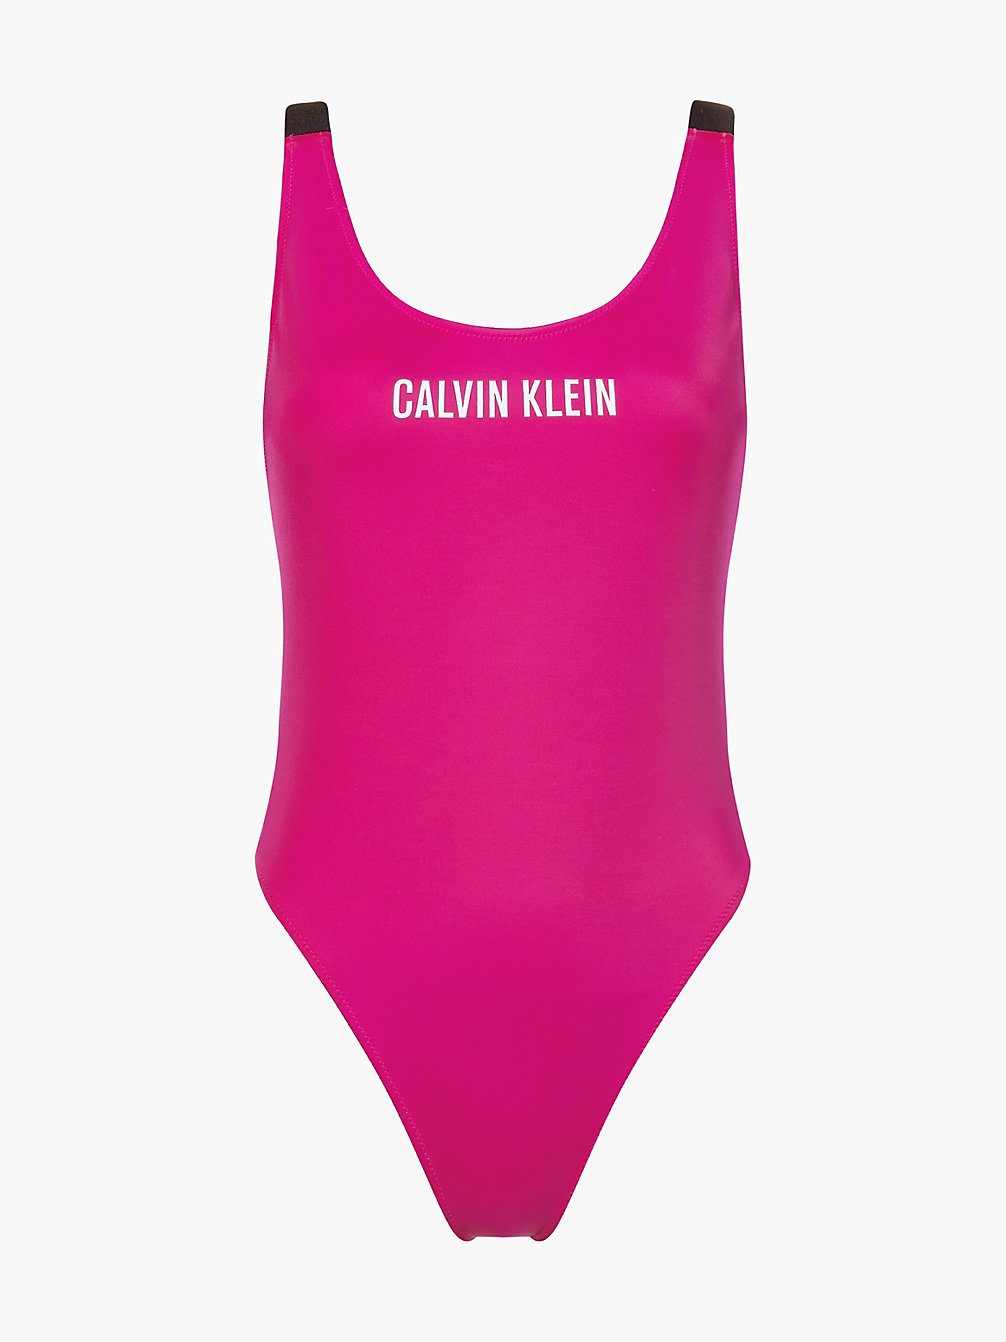 ROYAL PINK > Слитный купальник с декольте - Intense Power > undefined Женщины - Calvin Klein